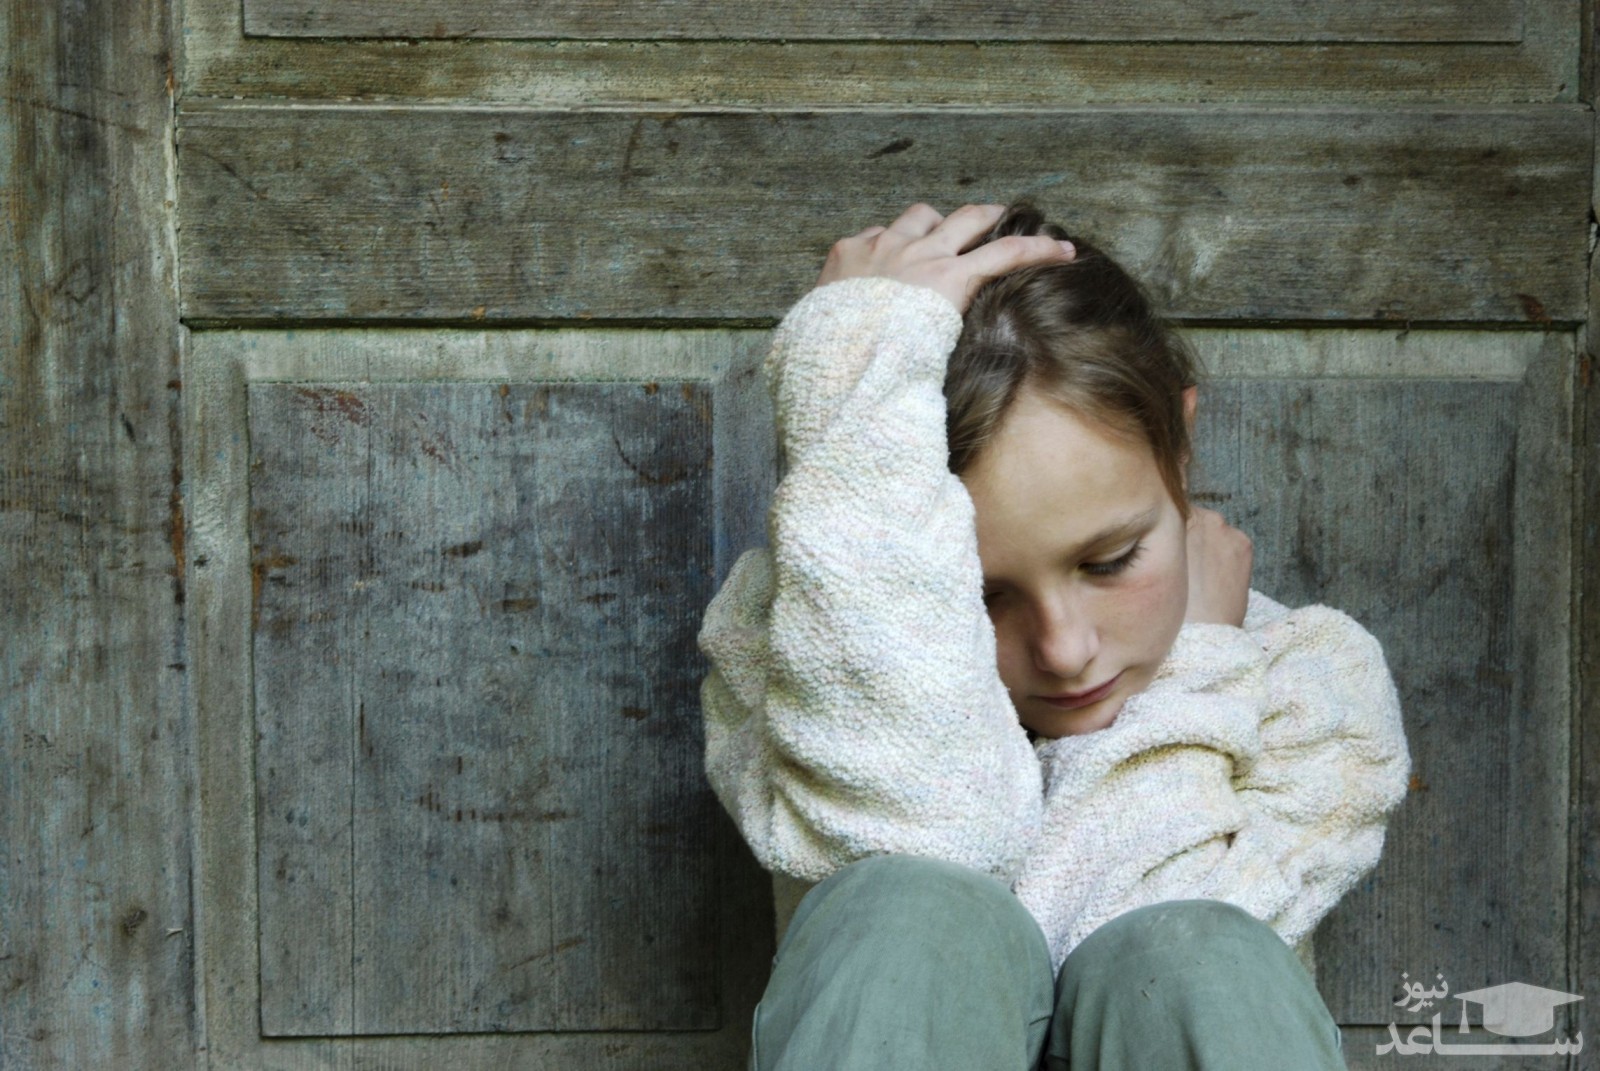 دلایل و علائم افسردگی کودکان کمتر از ۷ سال